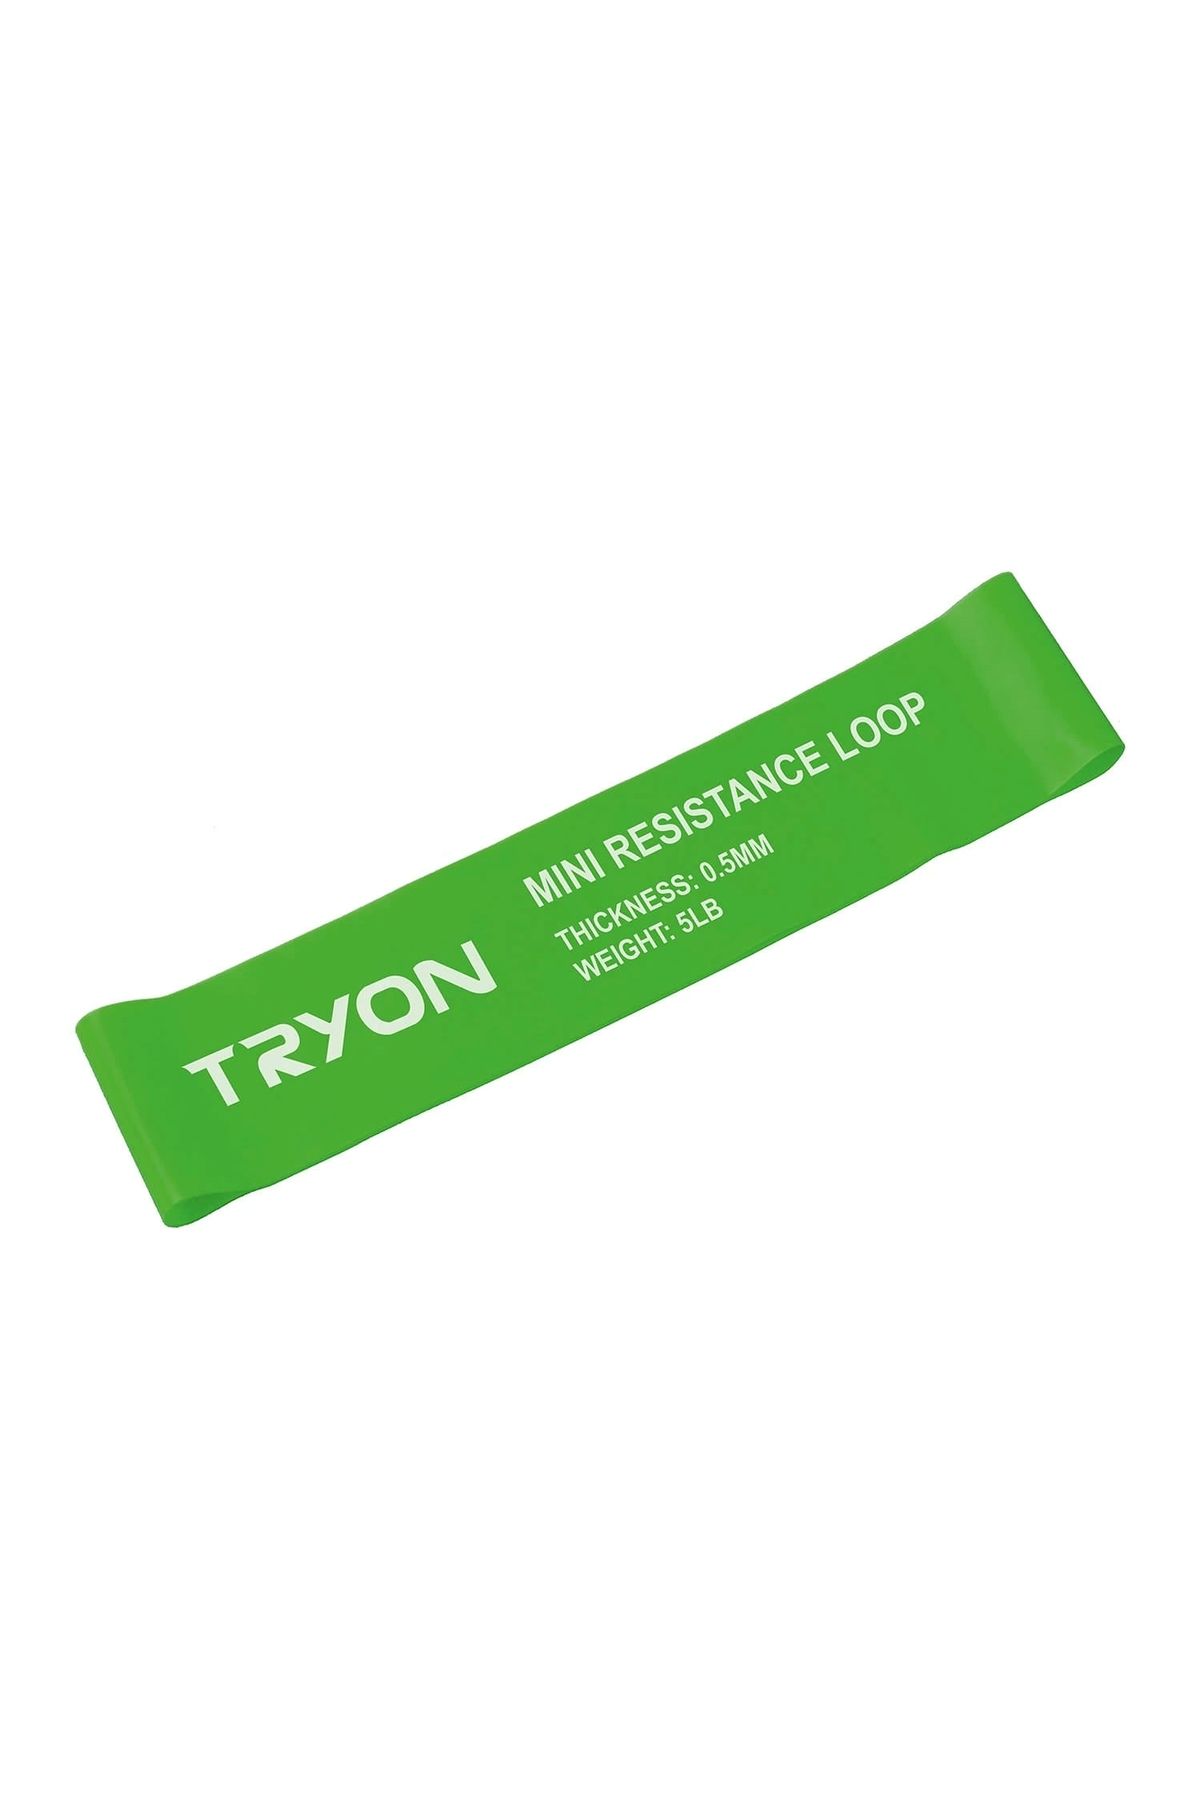 TRYON Güç Lastiği Bnd-105 - 0,5 Mm Hafif-yeşil